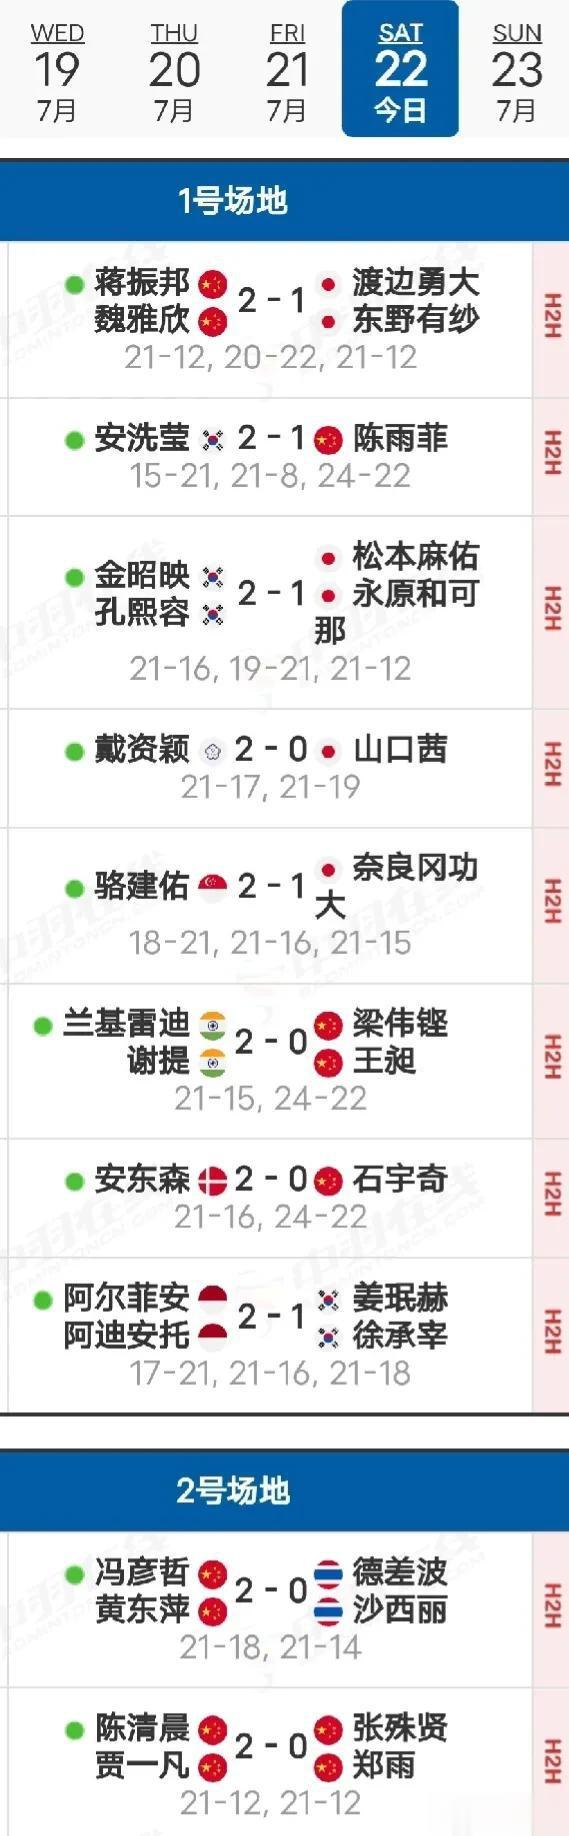  23决赛赛程
     23日决赛于北京时间10:00开赛，国羽两个项目进入决(2)